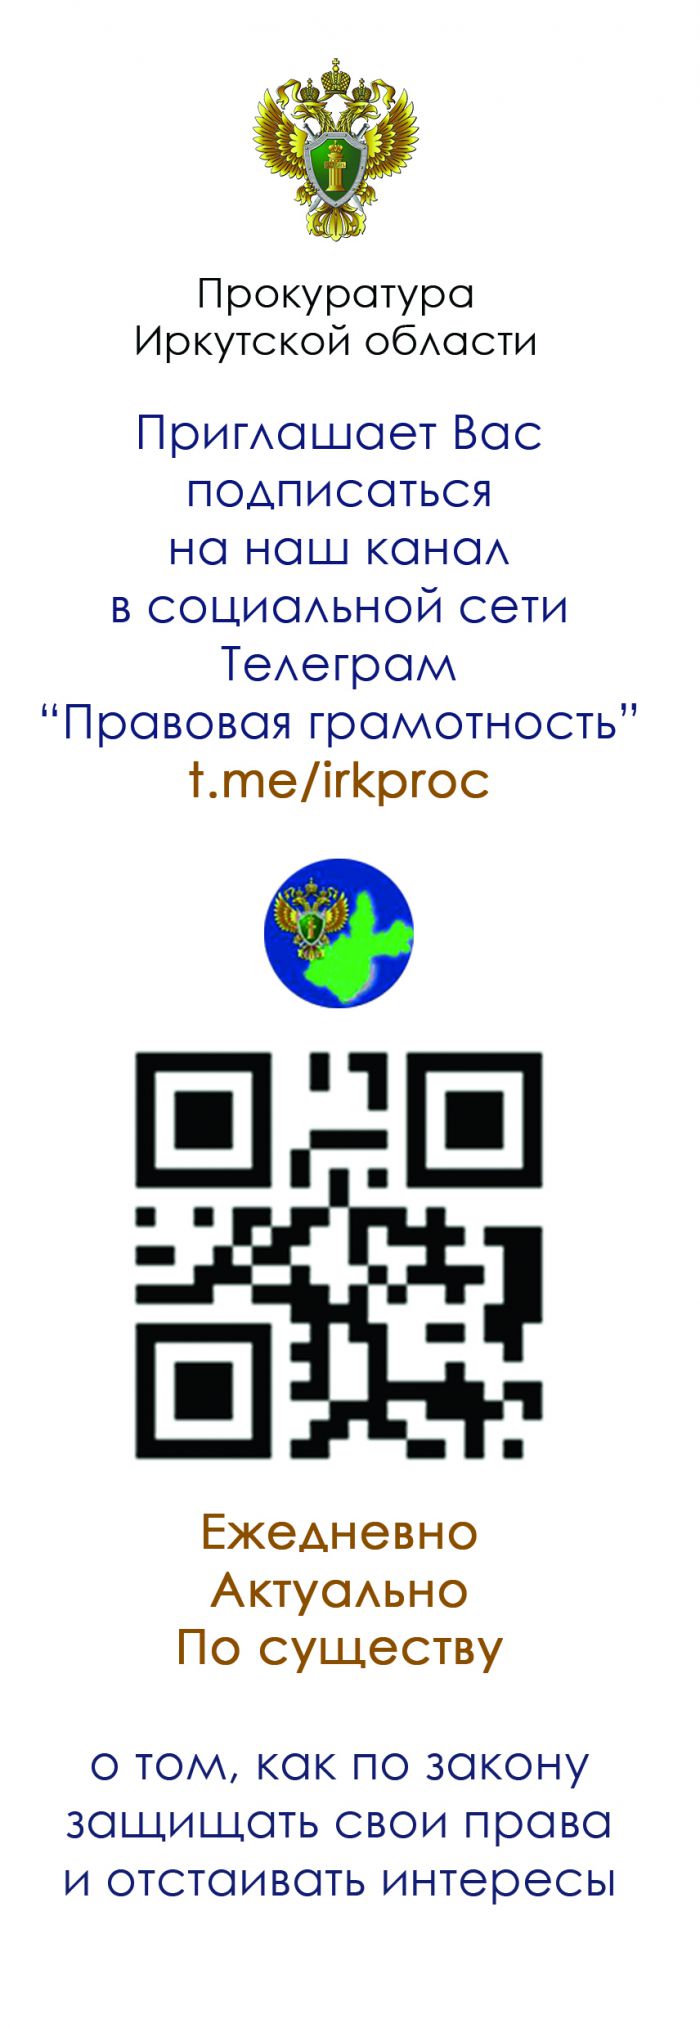 Приглашение в телеграм-канал "Правовая грамотность"